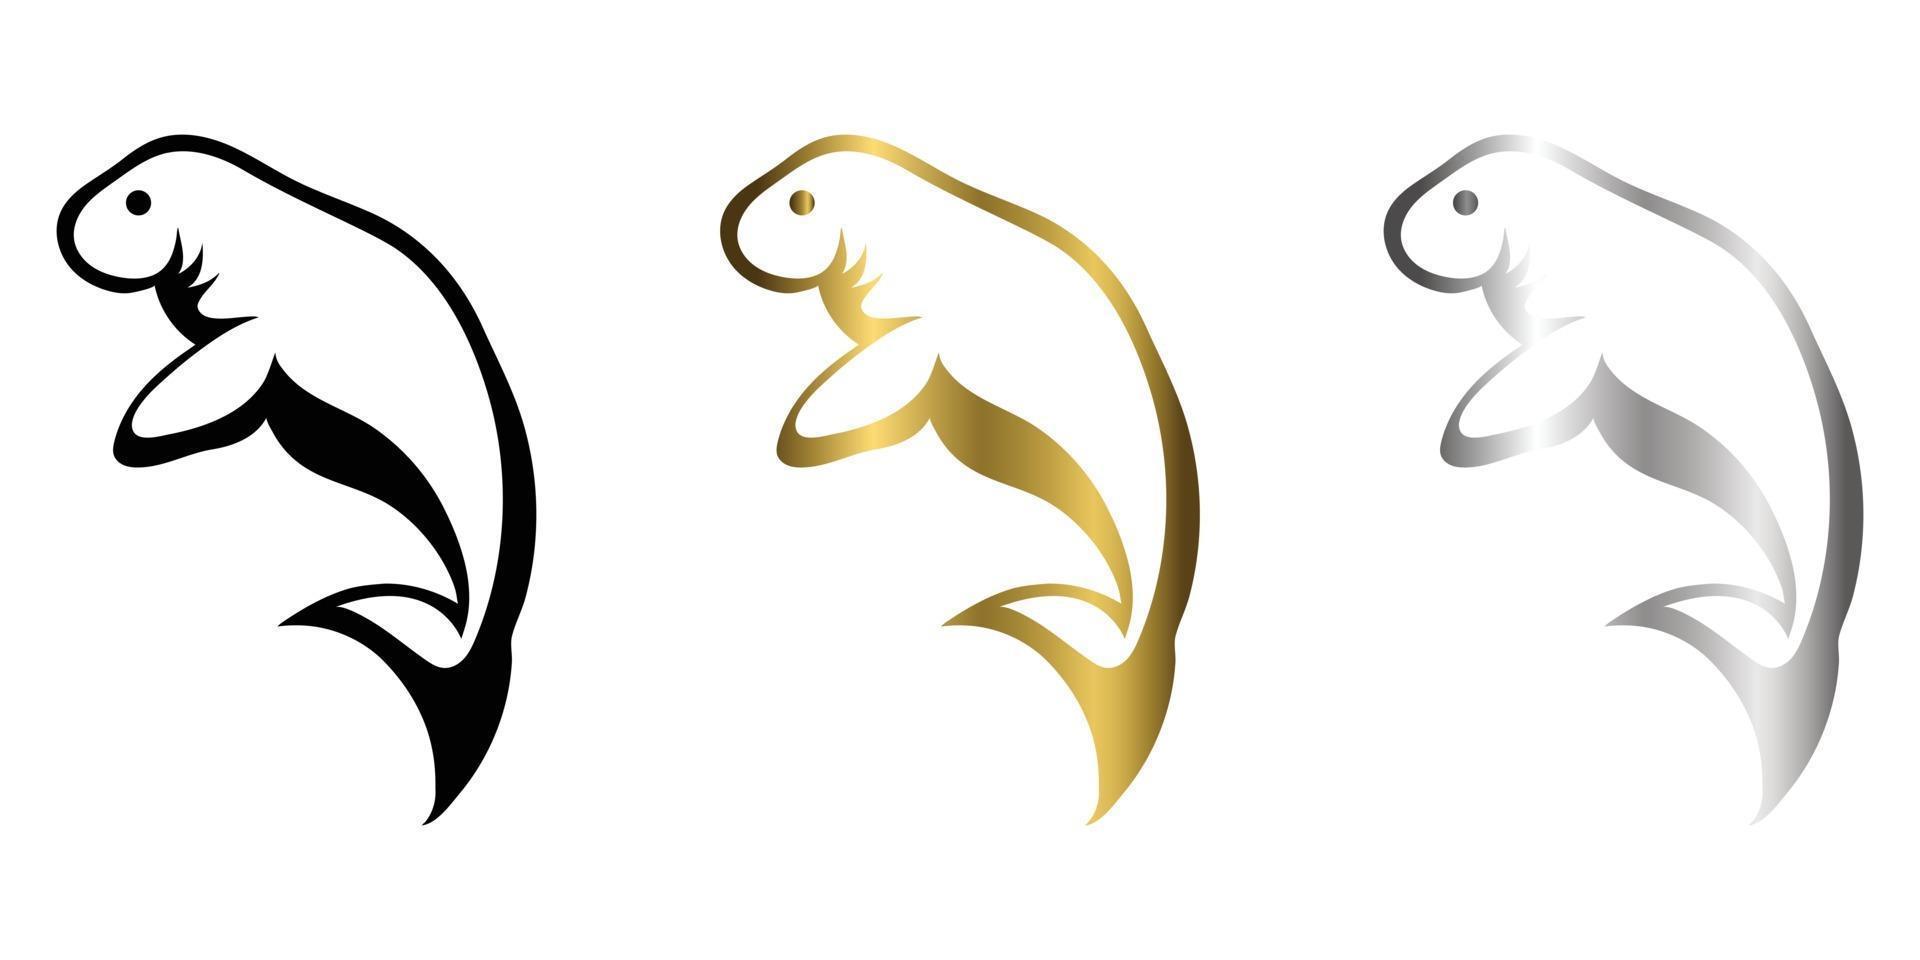 tre colori nero oro argento line art illustrazione vettoriale su sfondo bianco di un lamantino adatto per fare logo